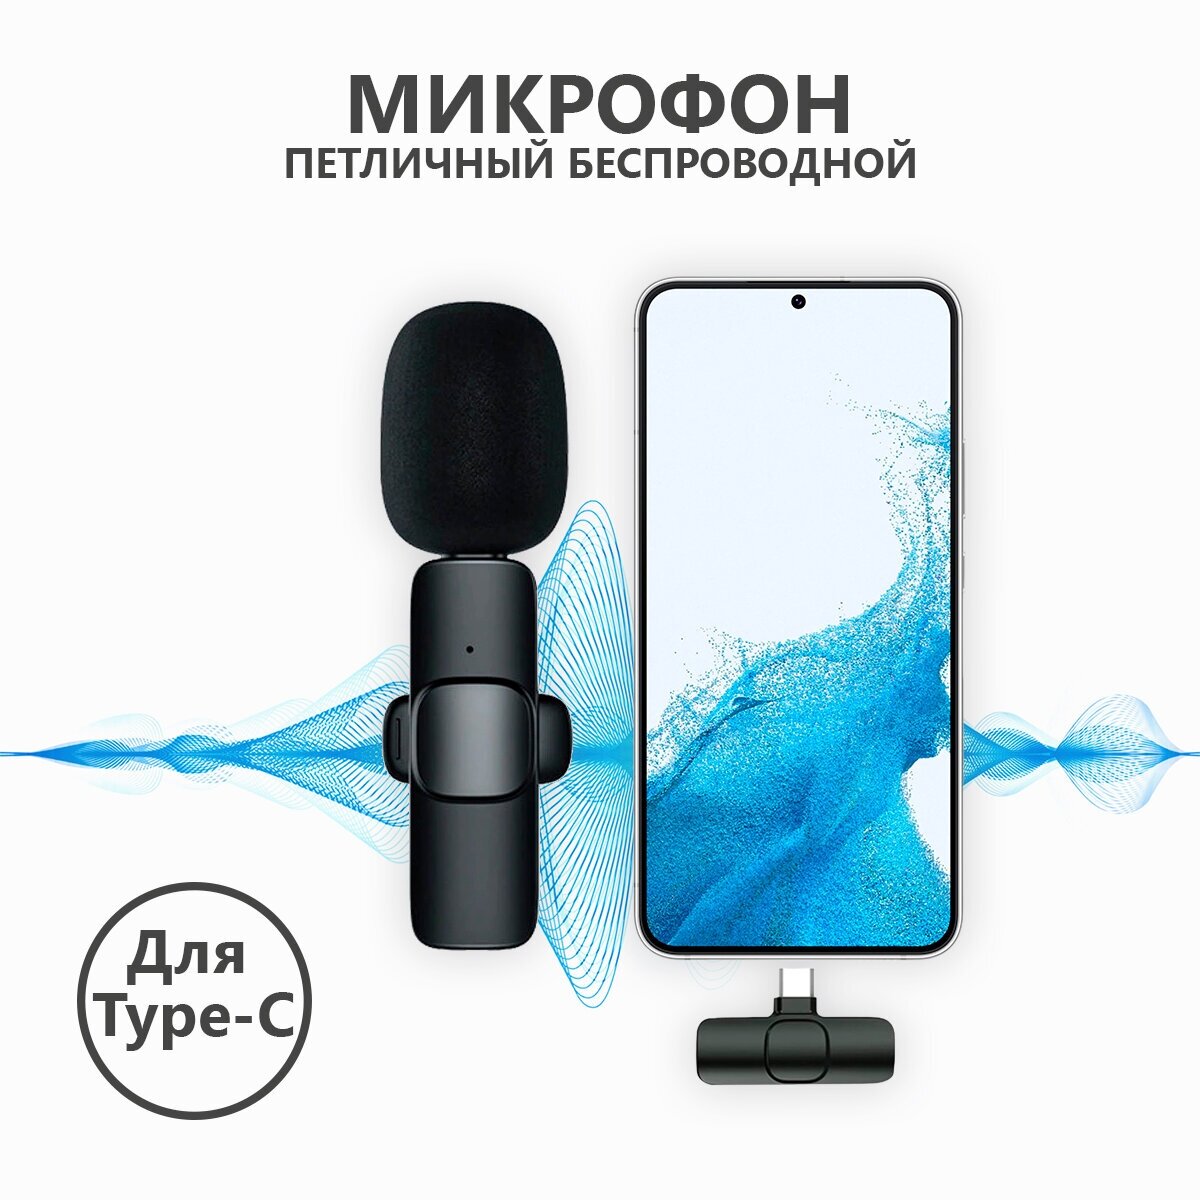 Микрофон петличный беспроводной для android / пелтичка для телефона для записи видео блога стрима звука с разъемом type-c